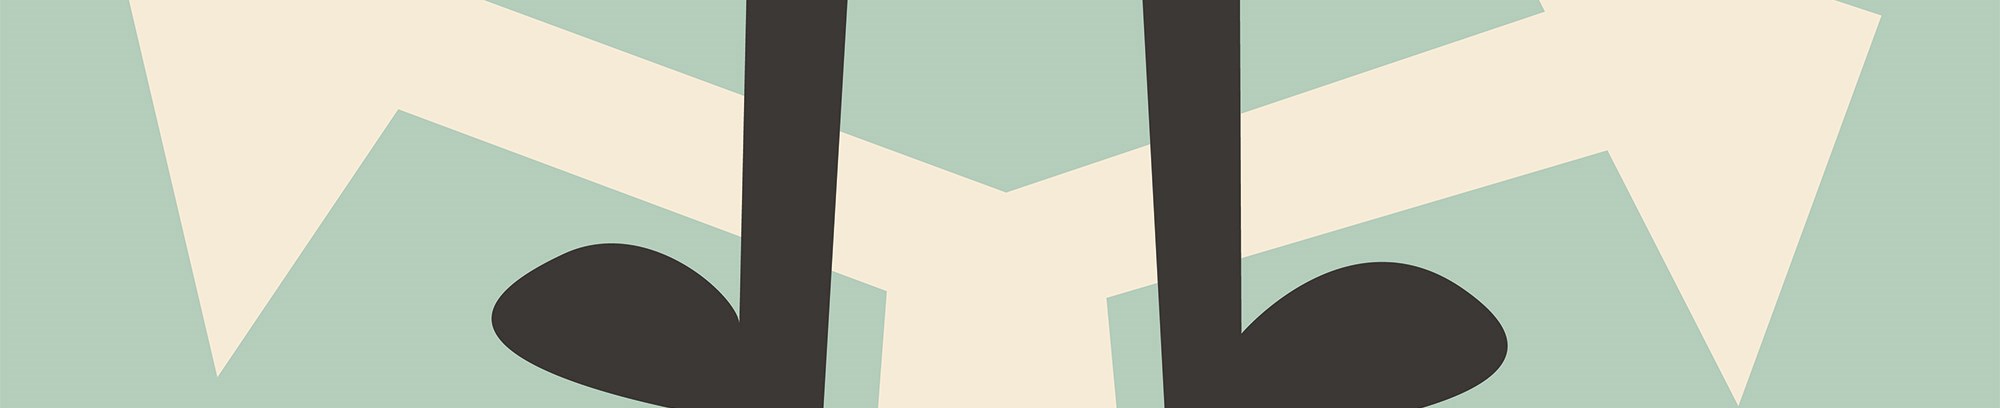 Illustration af ben, der står ved en hvis skillevej hvoraf to pile går i hver deres retning